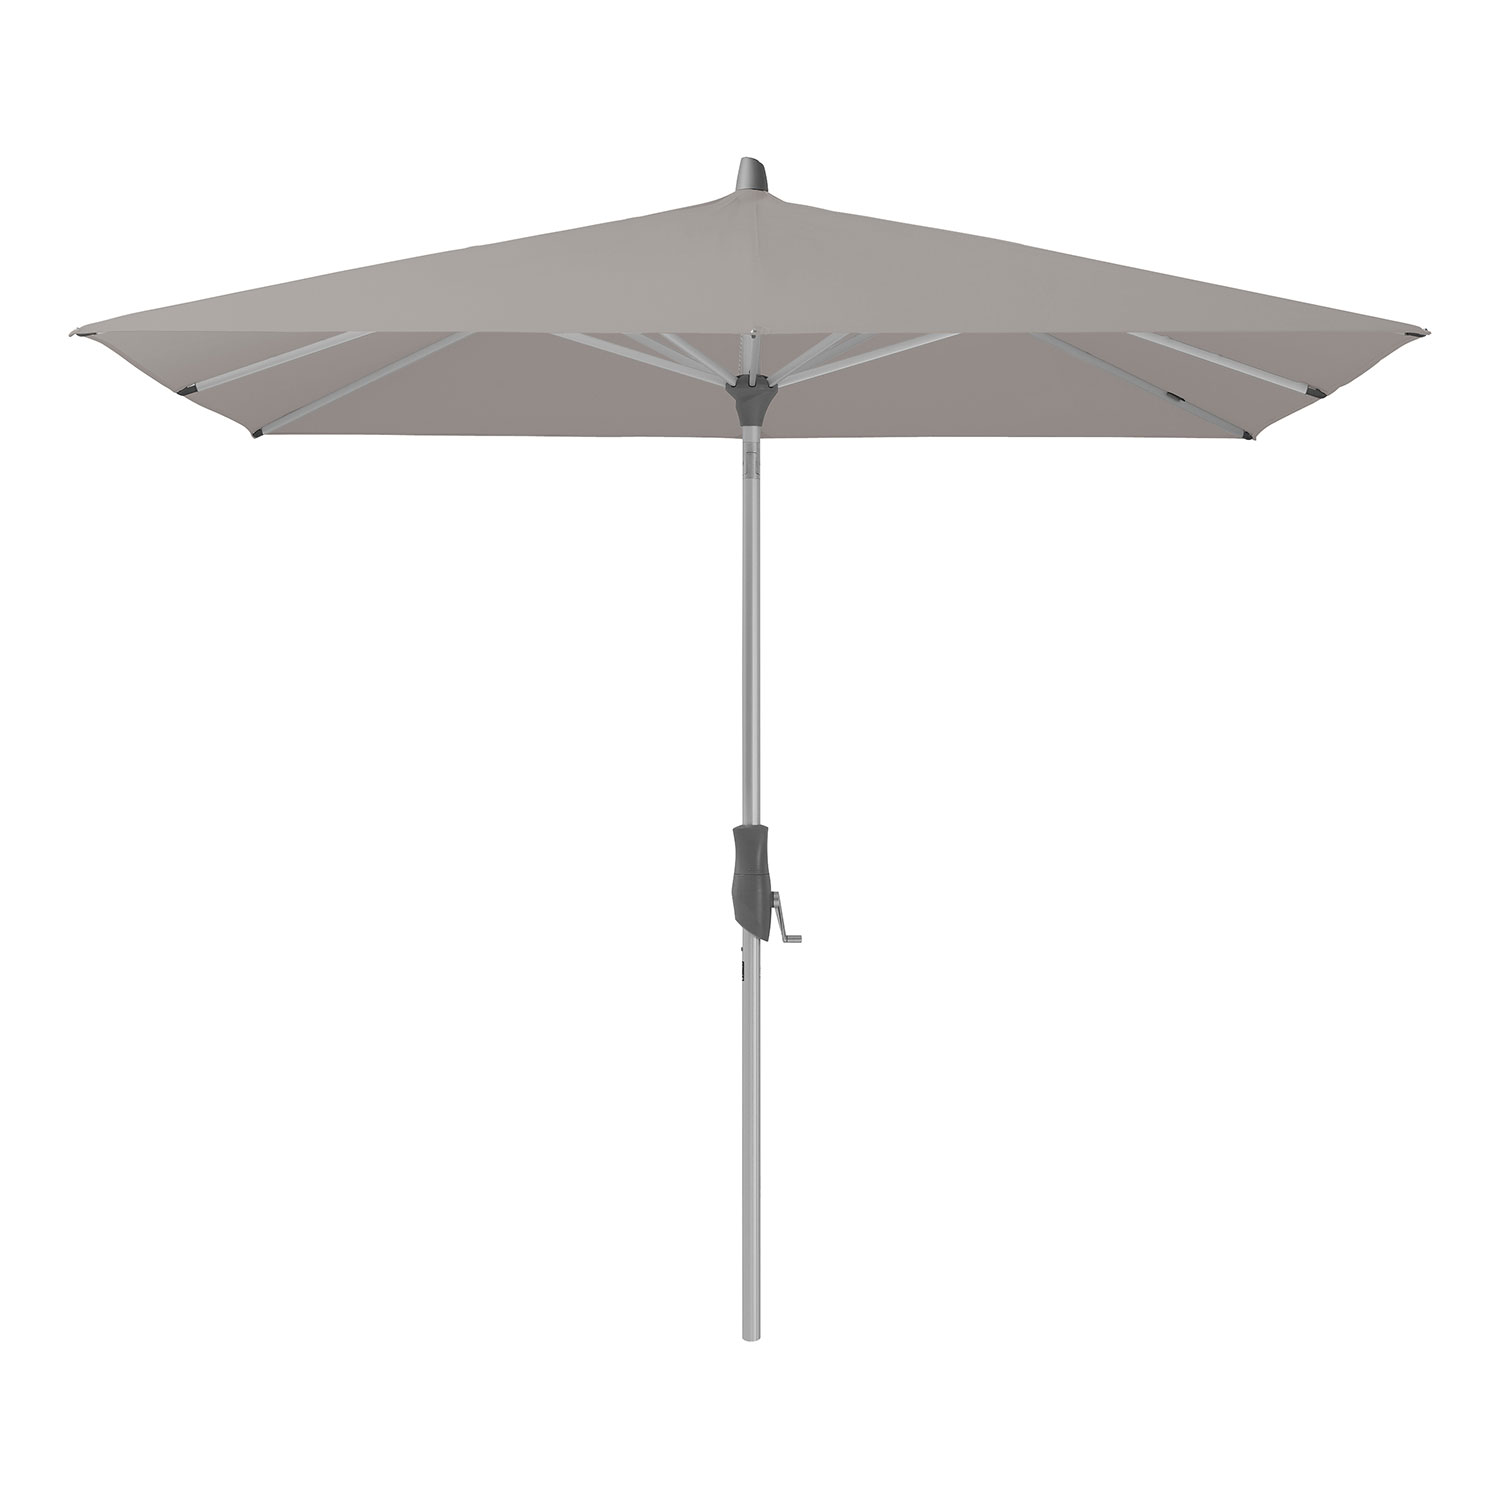 Glatz Alu-twist parasoll 240×240 cm cm kat.5 686 urban clay